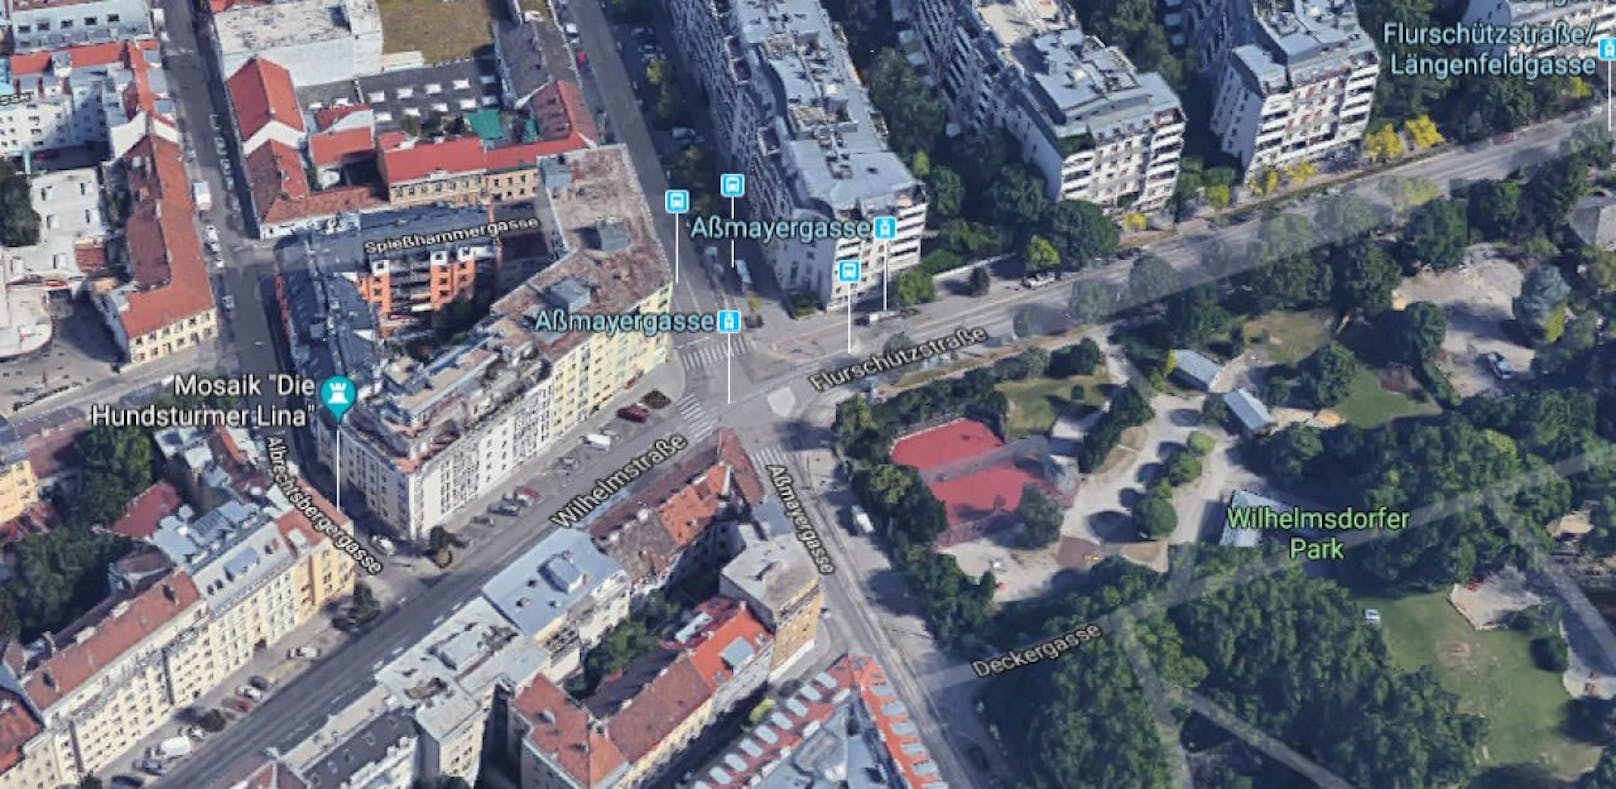 Wegen Gleisarbeiten der Wiener Linien wird laut ÖAMTC ab Dienstag der Kreuzungsbereich Aßmayergasse/Flurschützstraße/Wilhelmstraße in Meidling gesperrt.